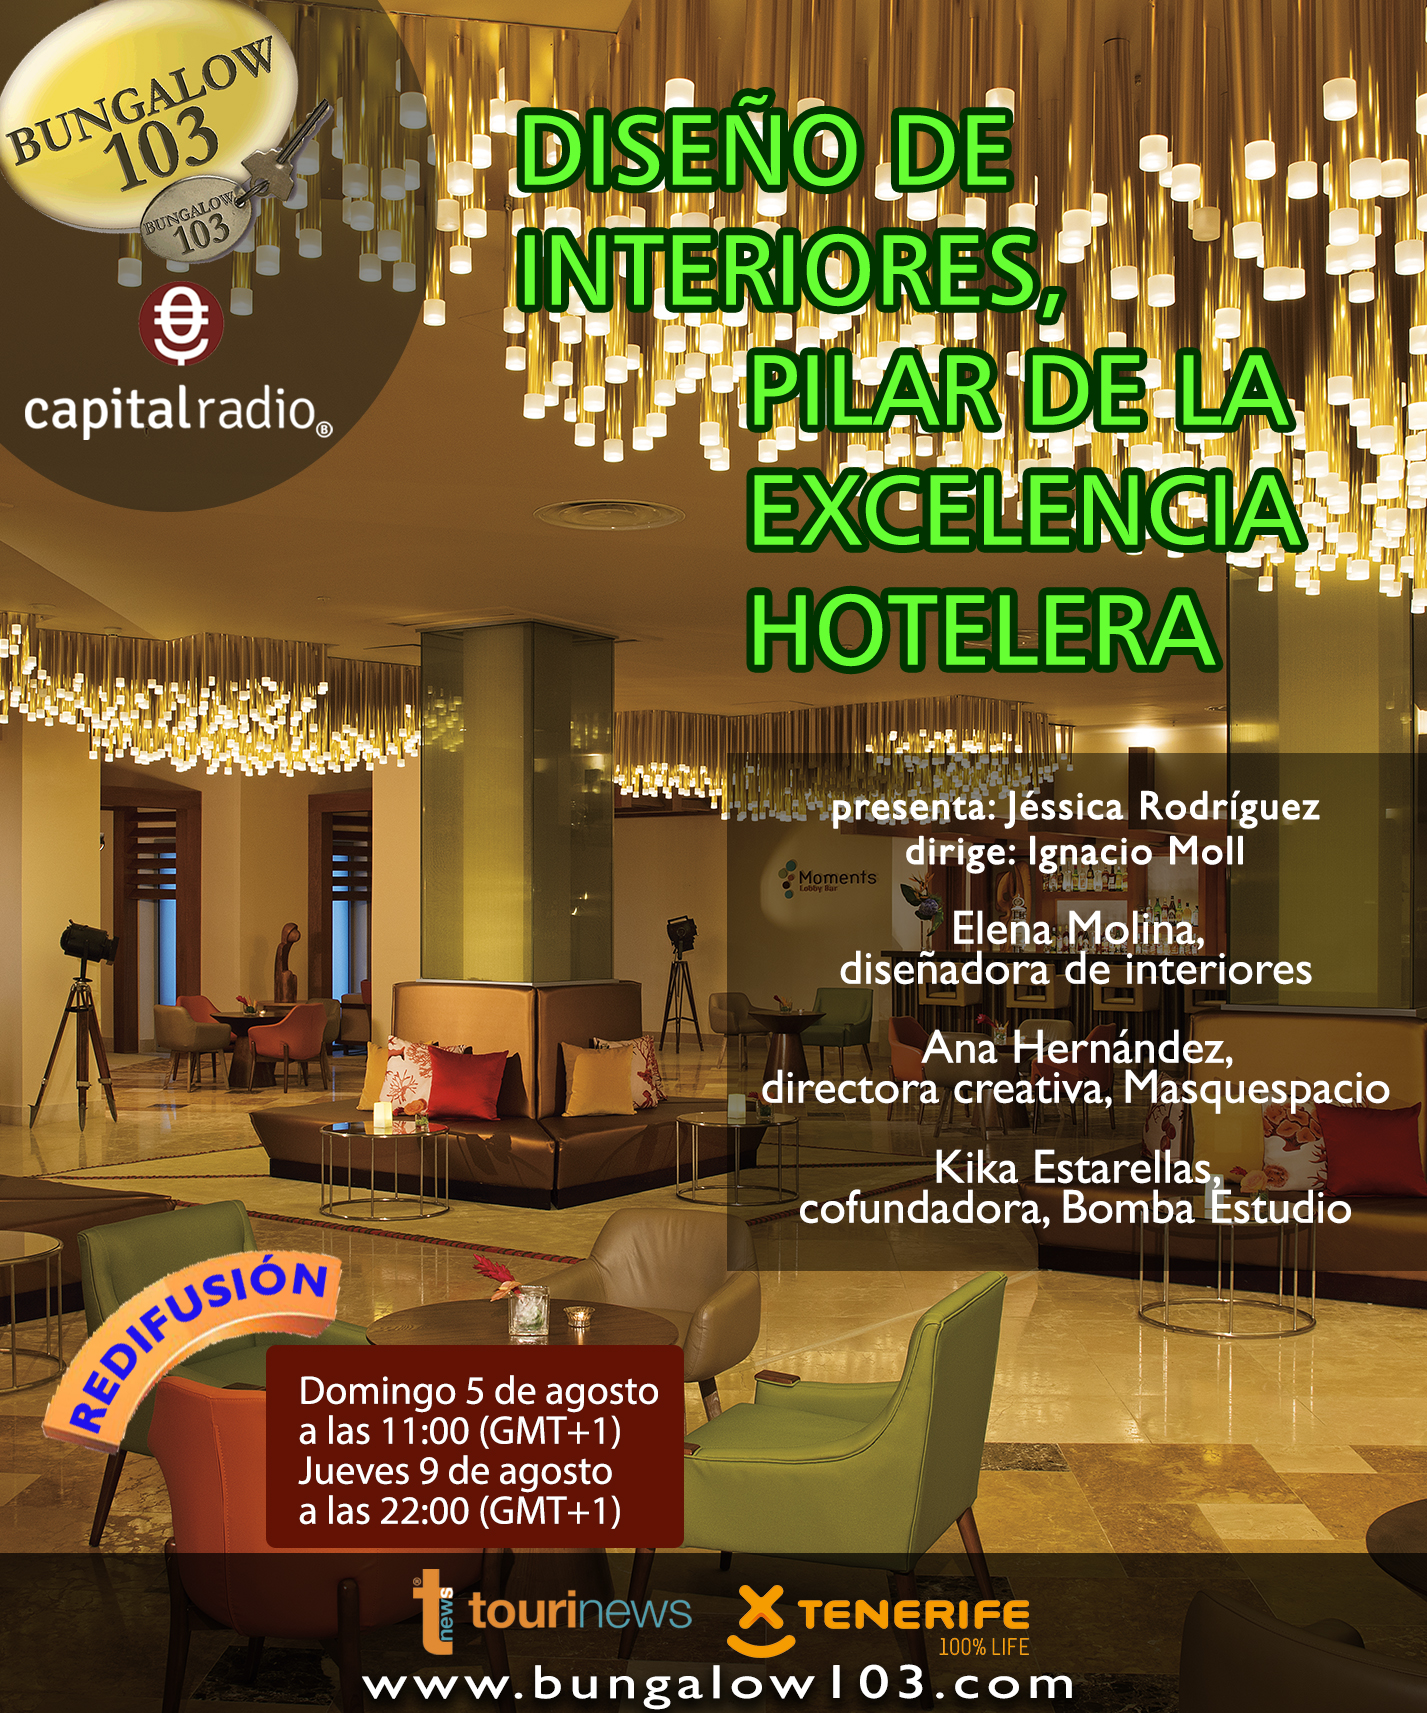 DISEÑO DE INTERIORES, PILAR DE LA EXCELENCIA HOTELERA